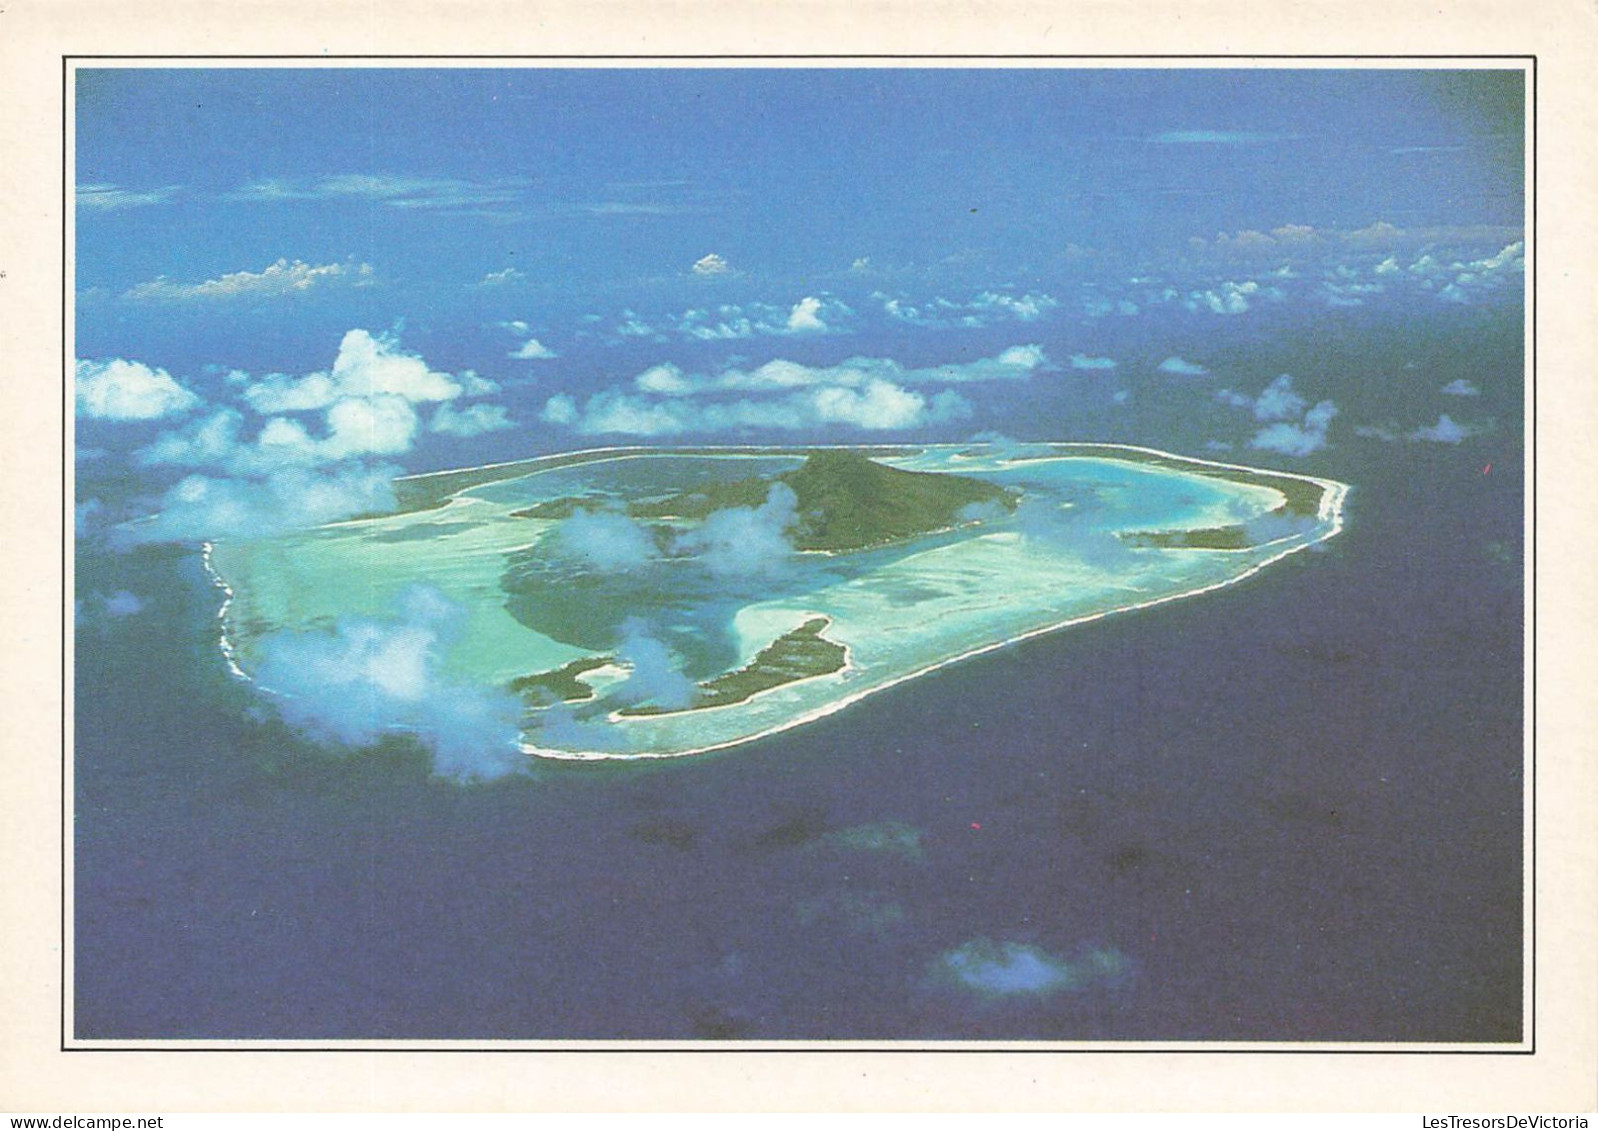 POLYNESIE FRANCAISE - Maupiti - L'île Vue Du Ciel - Colorisé - Carte Postale - Polinesia Francese